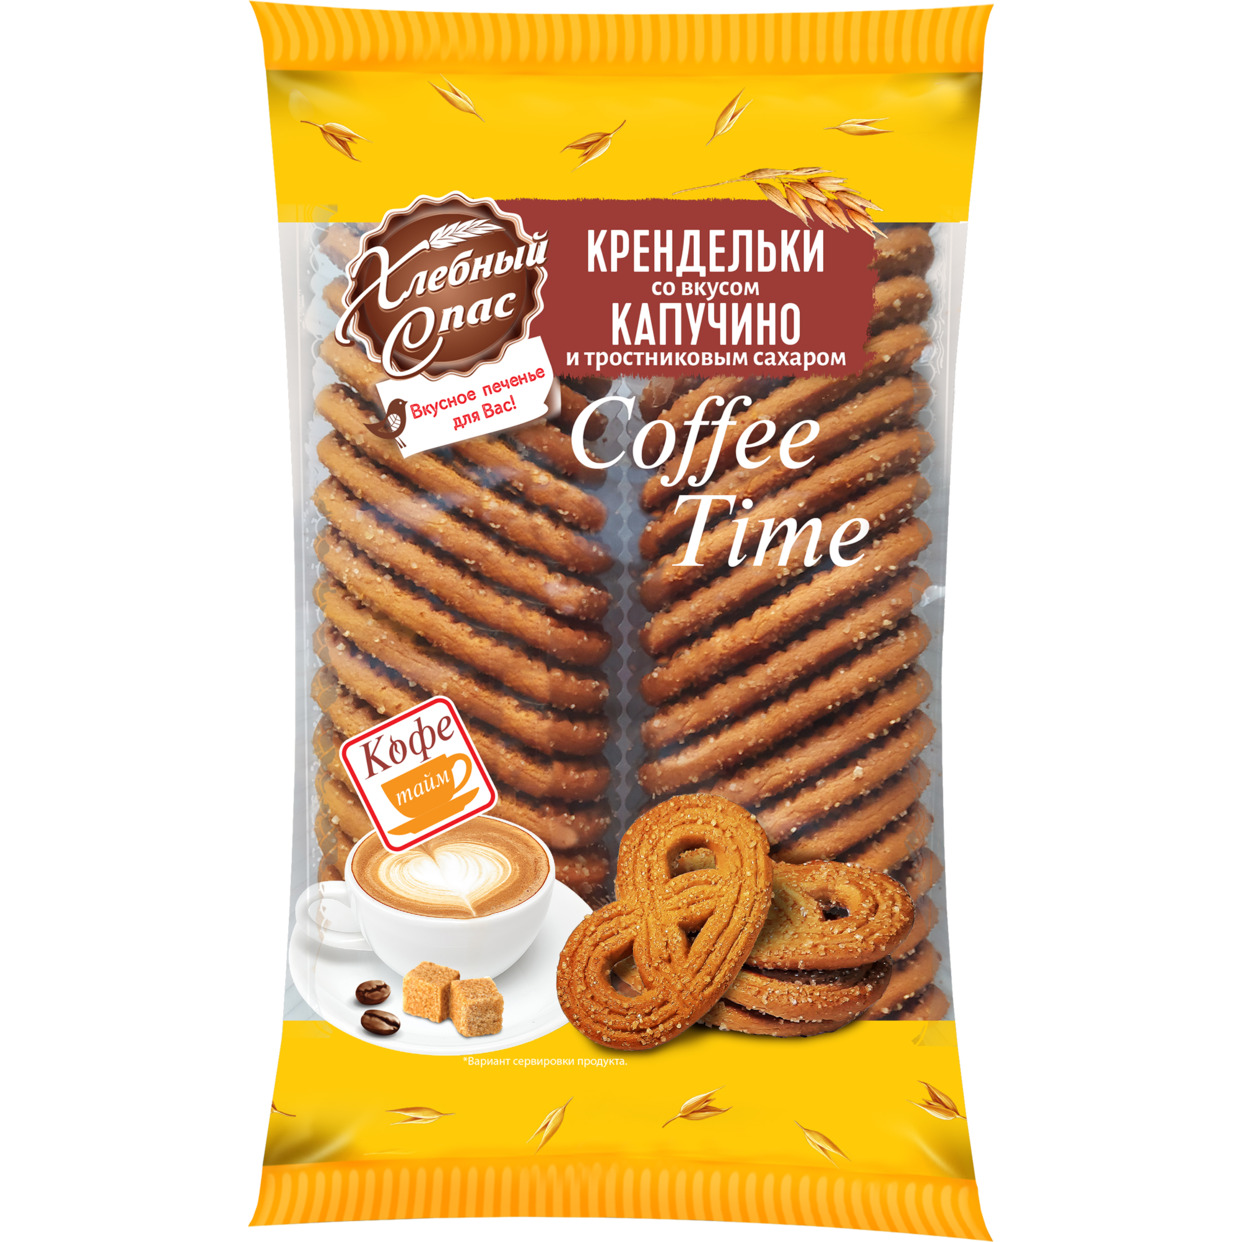 Печенье сдобное КРЕНДЕЛЬКИ COFFEE TIME со вкусом "капучино" и тростниковым сахаром 320г по акции в Пятерочке